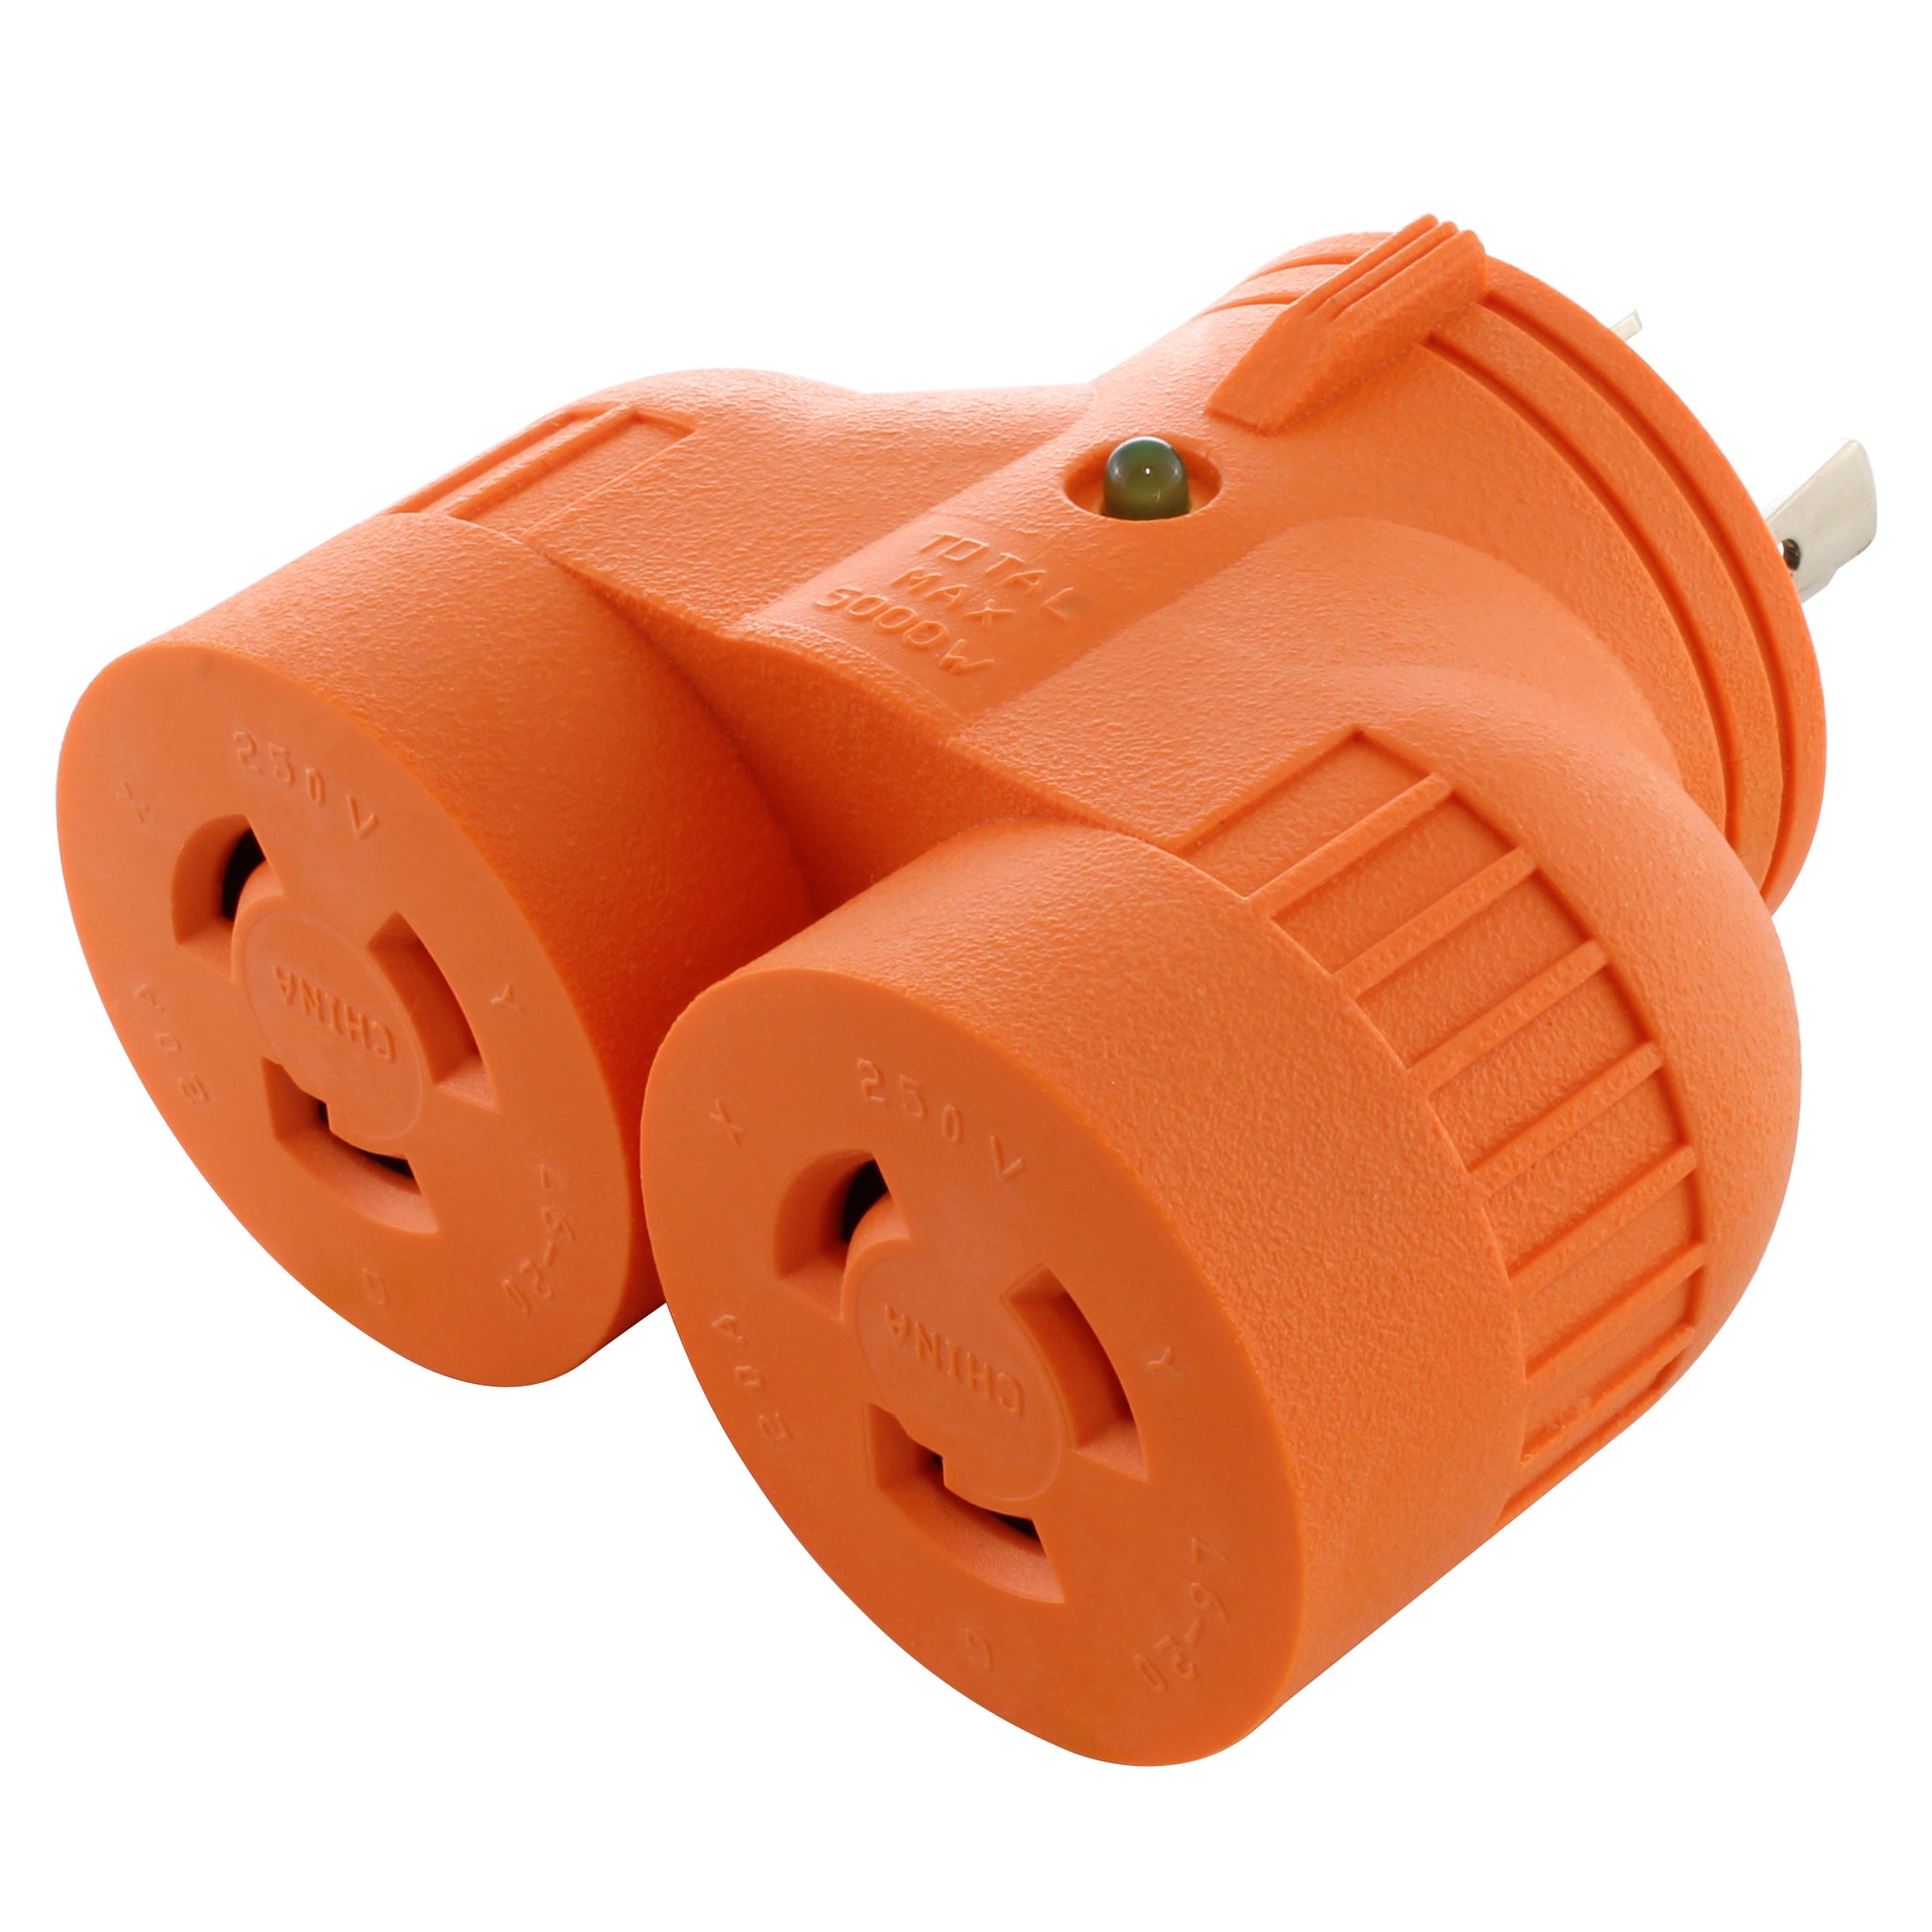  230 Volt Plug Adapter